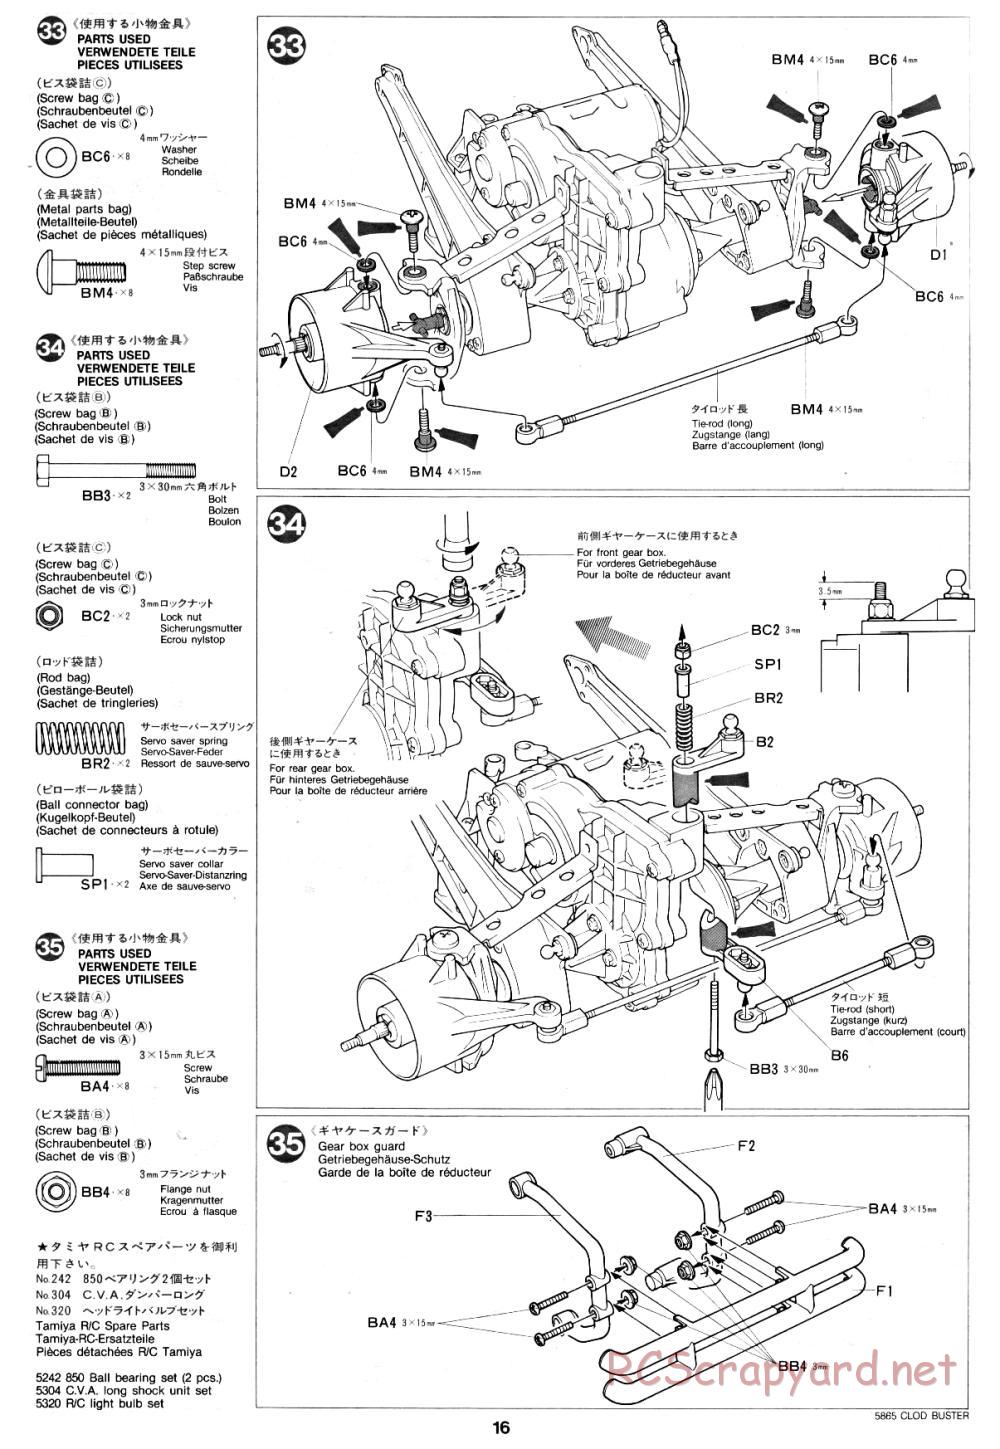 Tamiya - Clod Buster - 58065 - Manual - Page 16